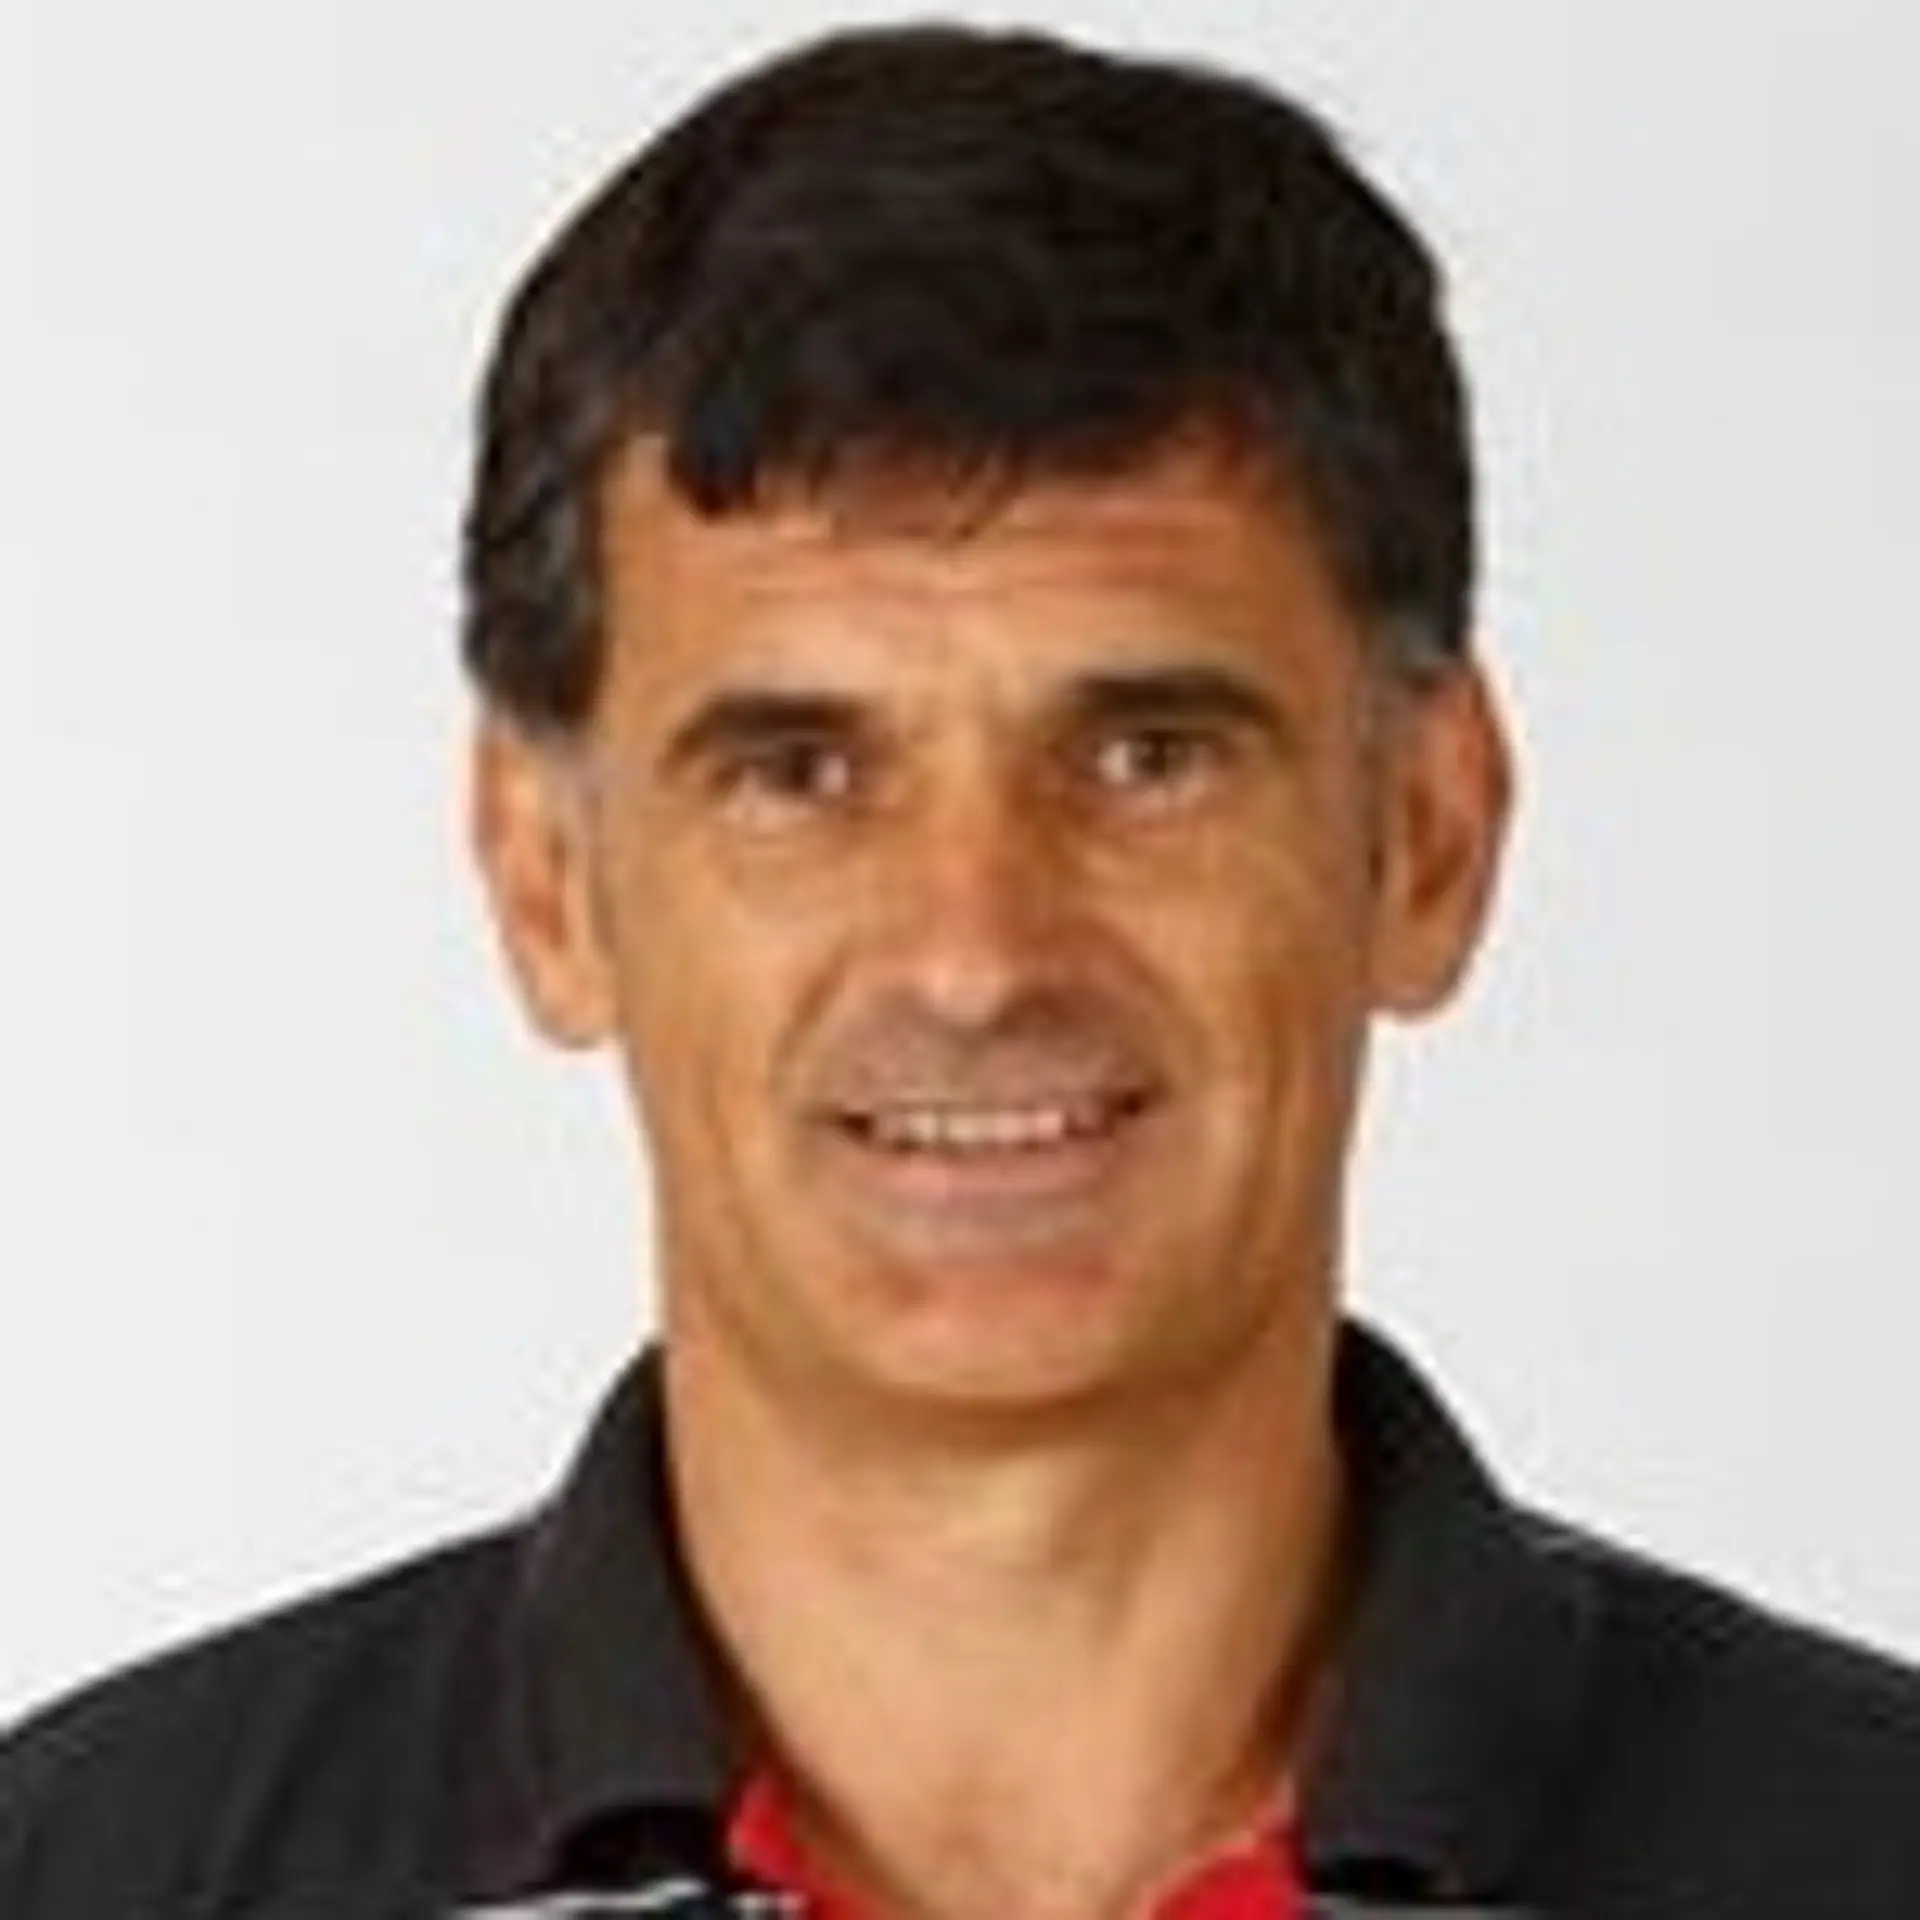 Jose Luis Mendilibar